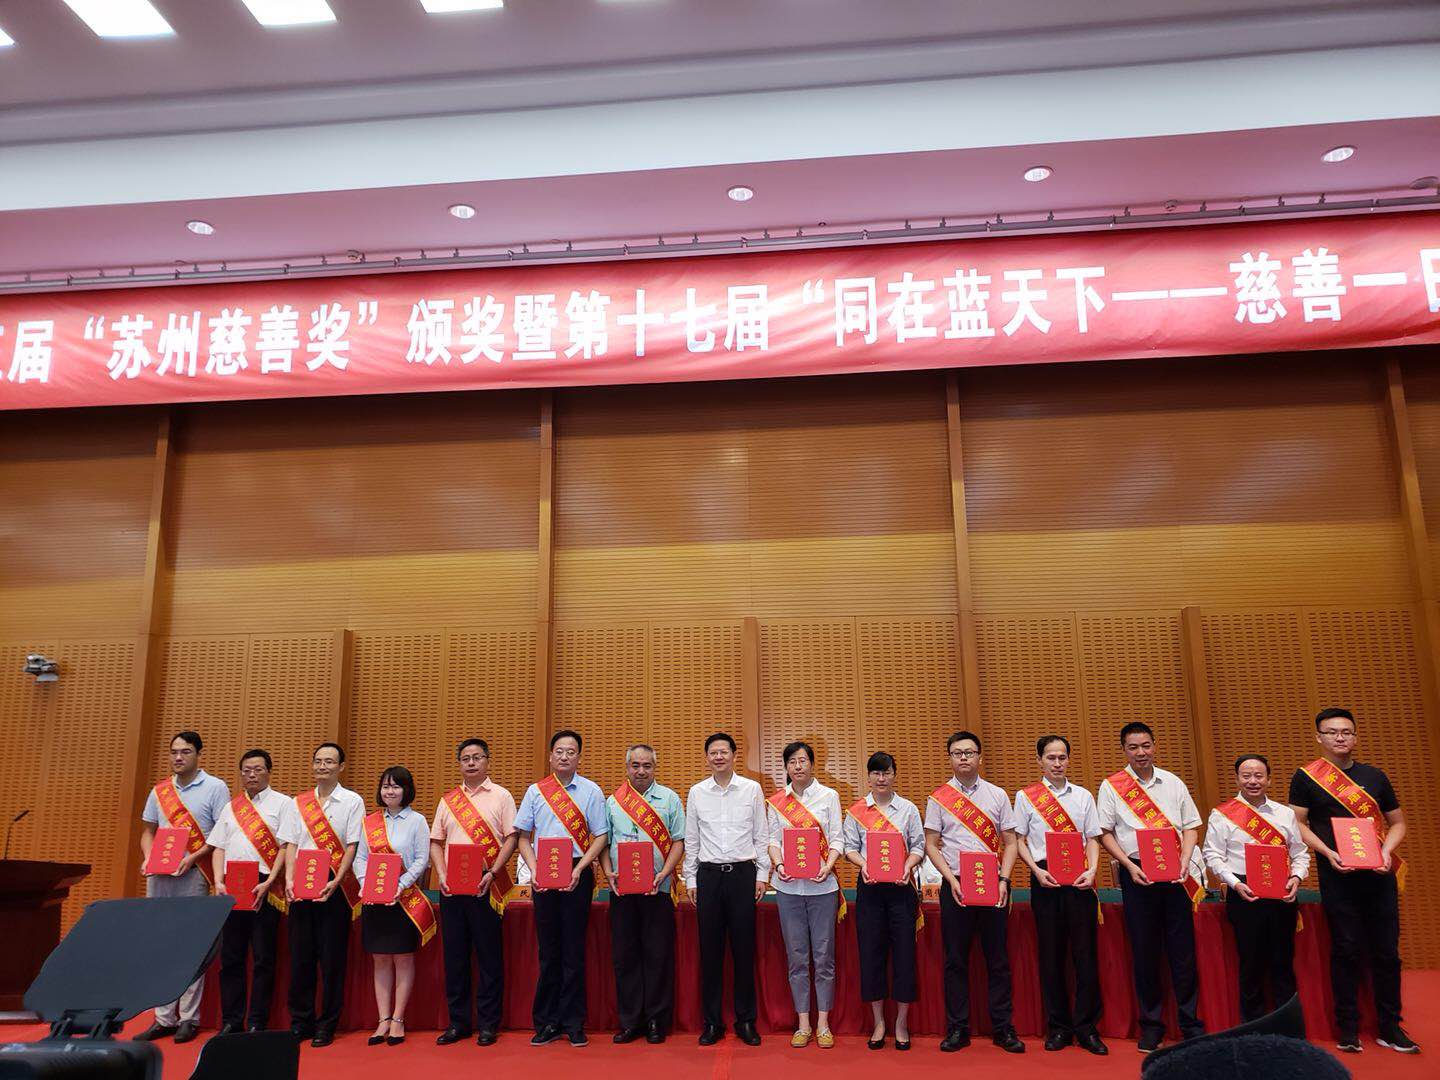 Mo Lindi, presidente de Yongding, ganó el "Premio de Caridad de Jiangsu a la persona con mayor donación de caridad"